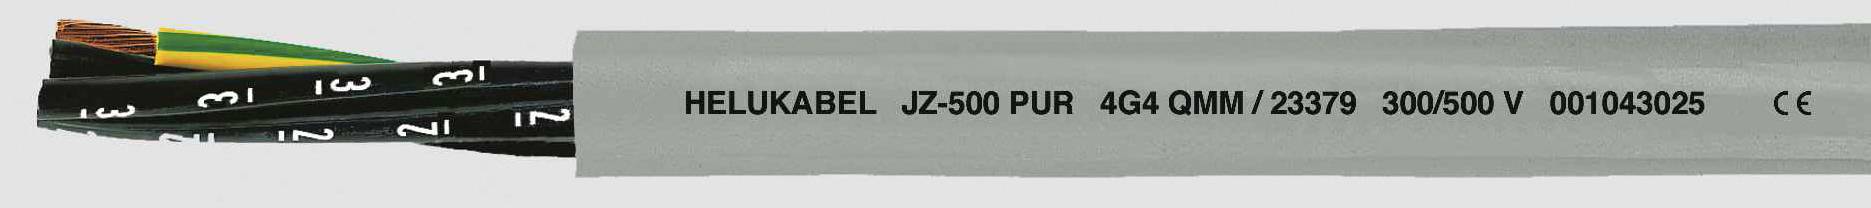 HELUKABEL JZ-500 PUR Steuerleitung 7 G 0.75 mm² Grau 23336 100 m